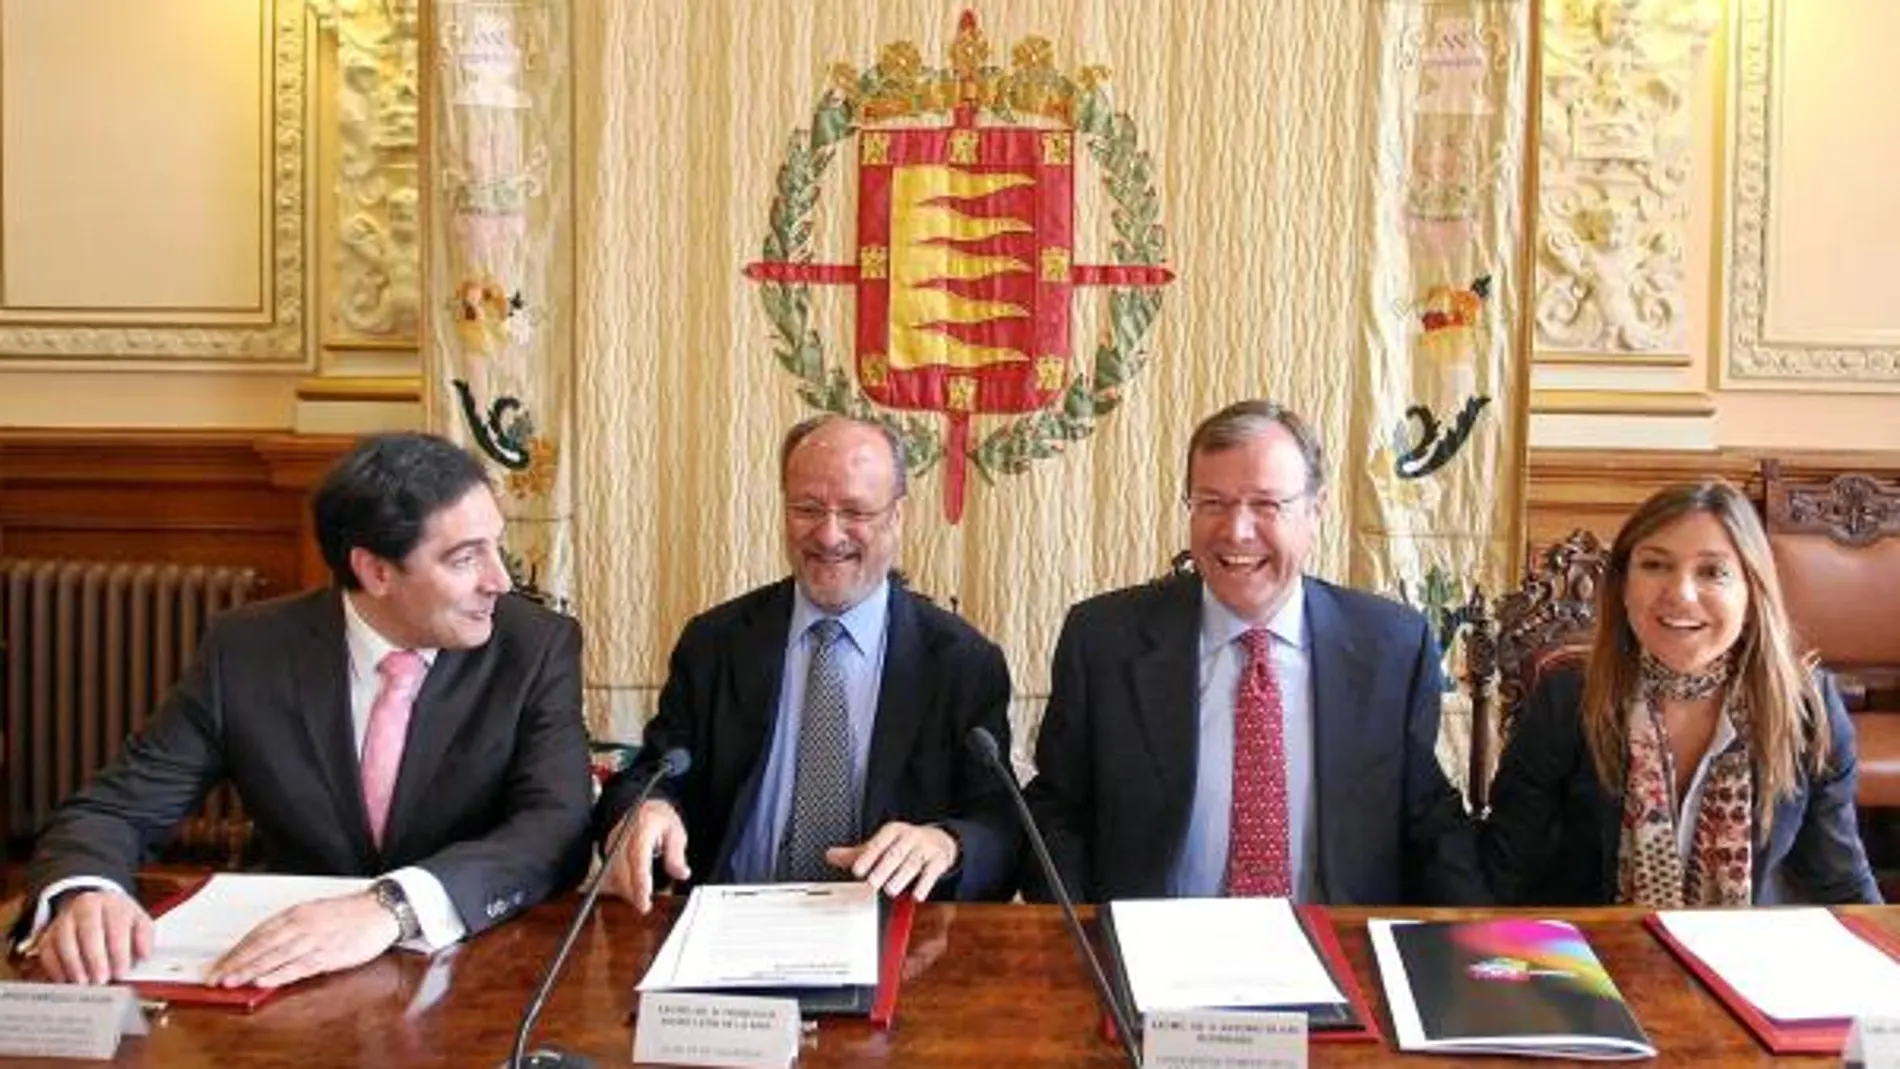 El consejero de Fomento, Antonio Silván, y el alcalde de valladolid, Javier León de la Riva, firman el acuerdo